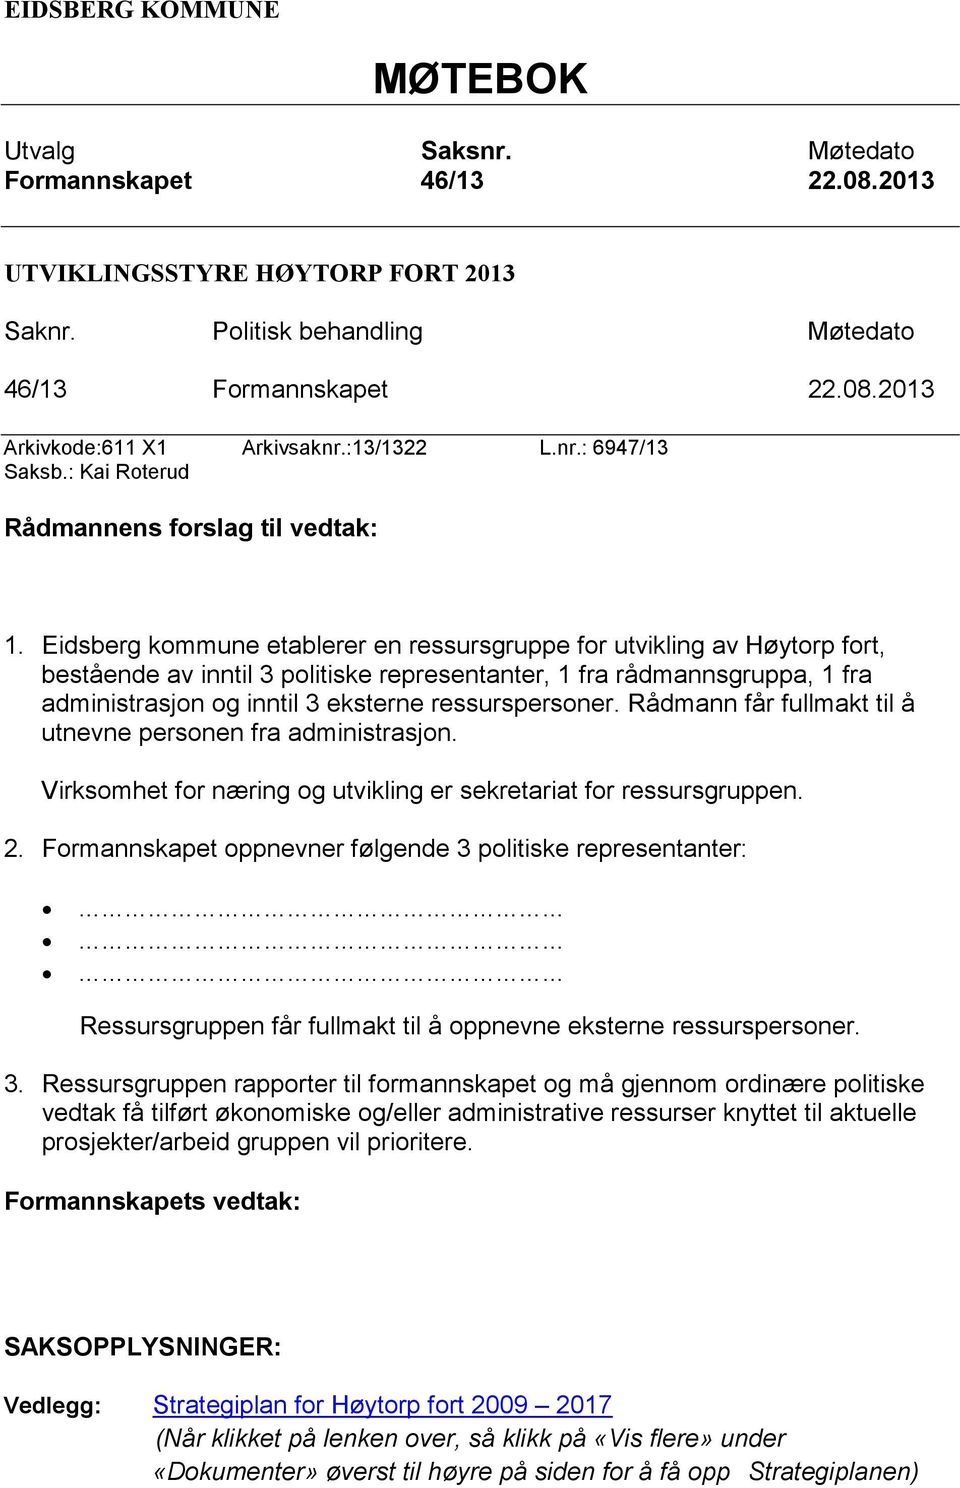 Eidsberg kommune etablerer en ressursgruppe for utvikling av Høytorp fort, bestående av inntil 3 politiske representanter, 1 fra rådmannsgruppa, 1 fra administrasjon og inntil 3 eksterne